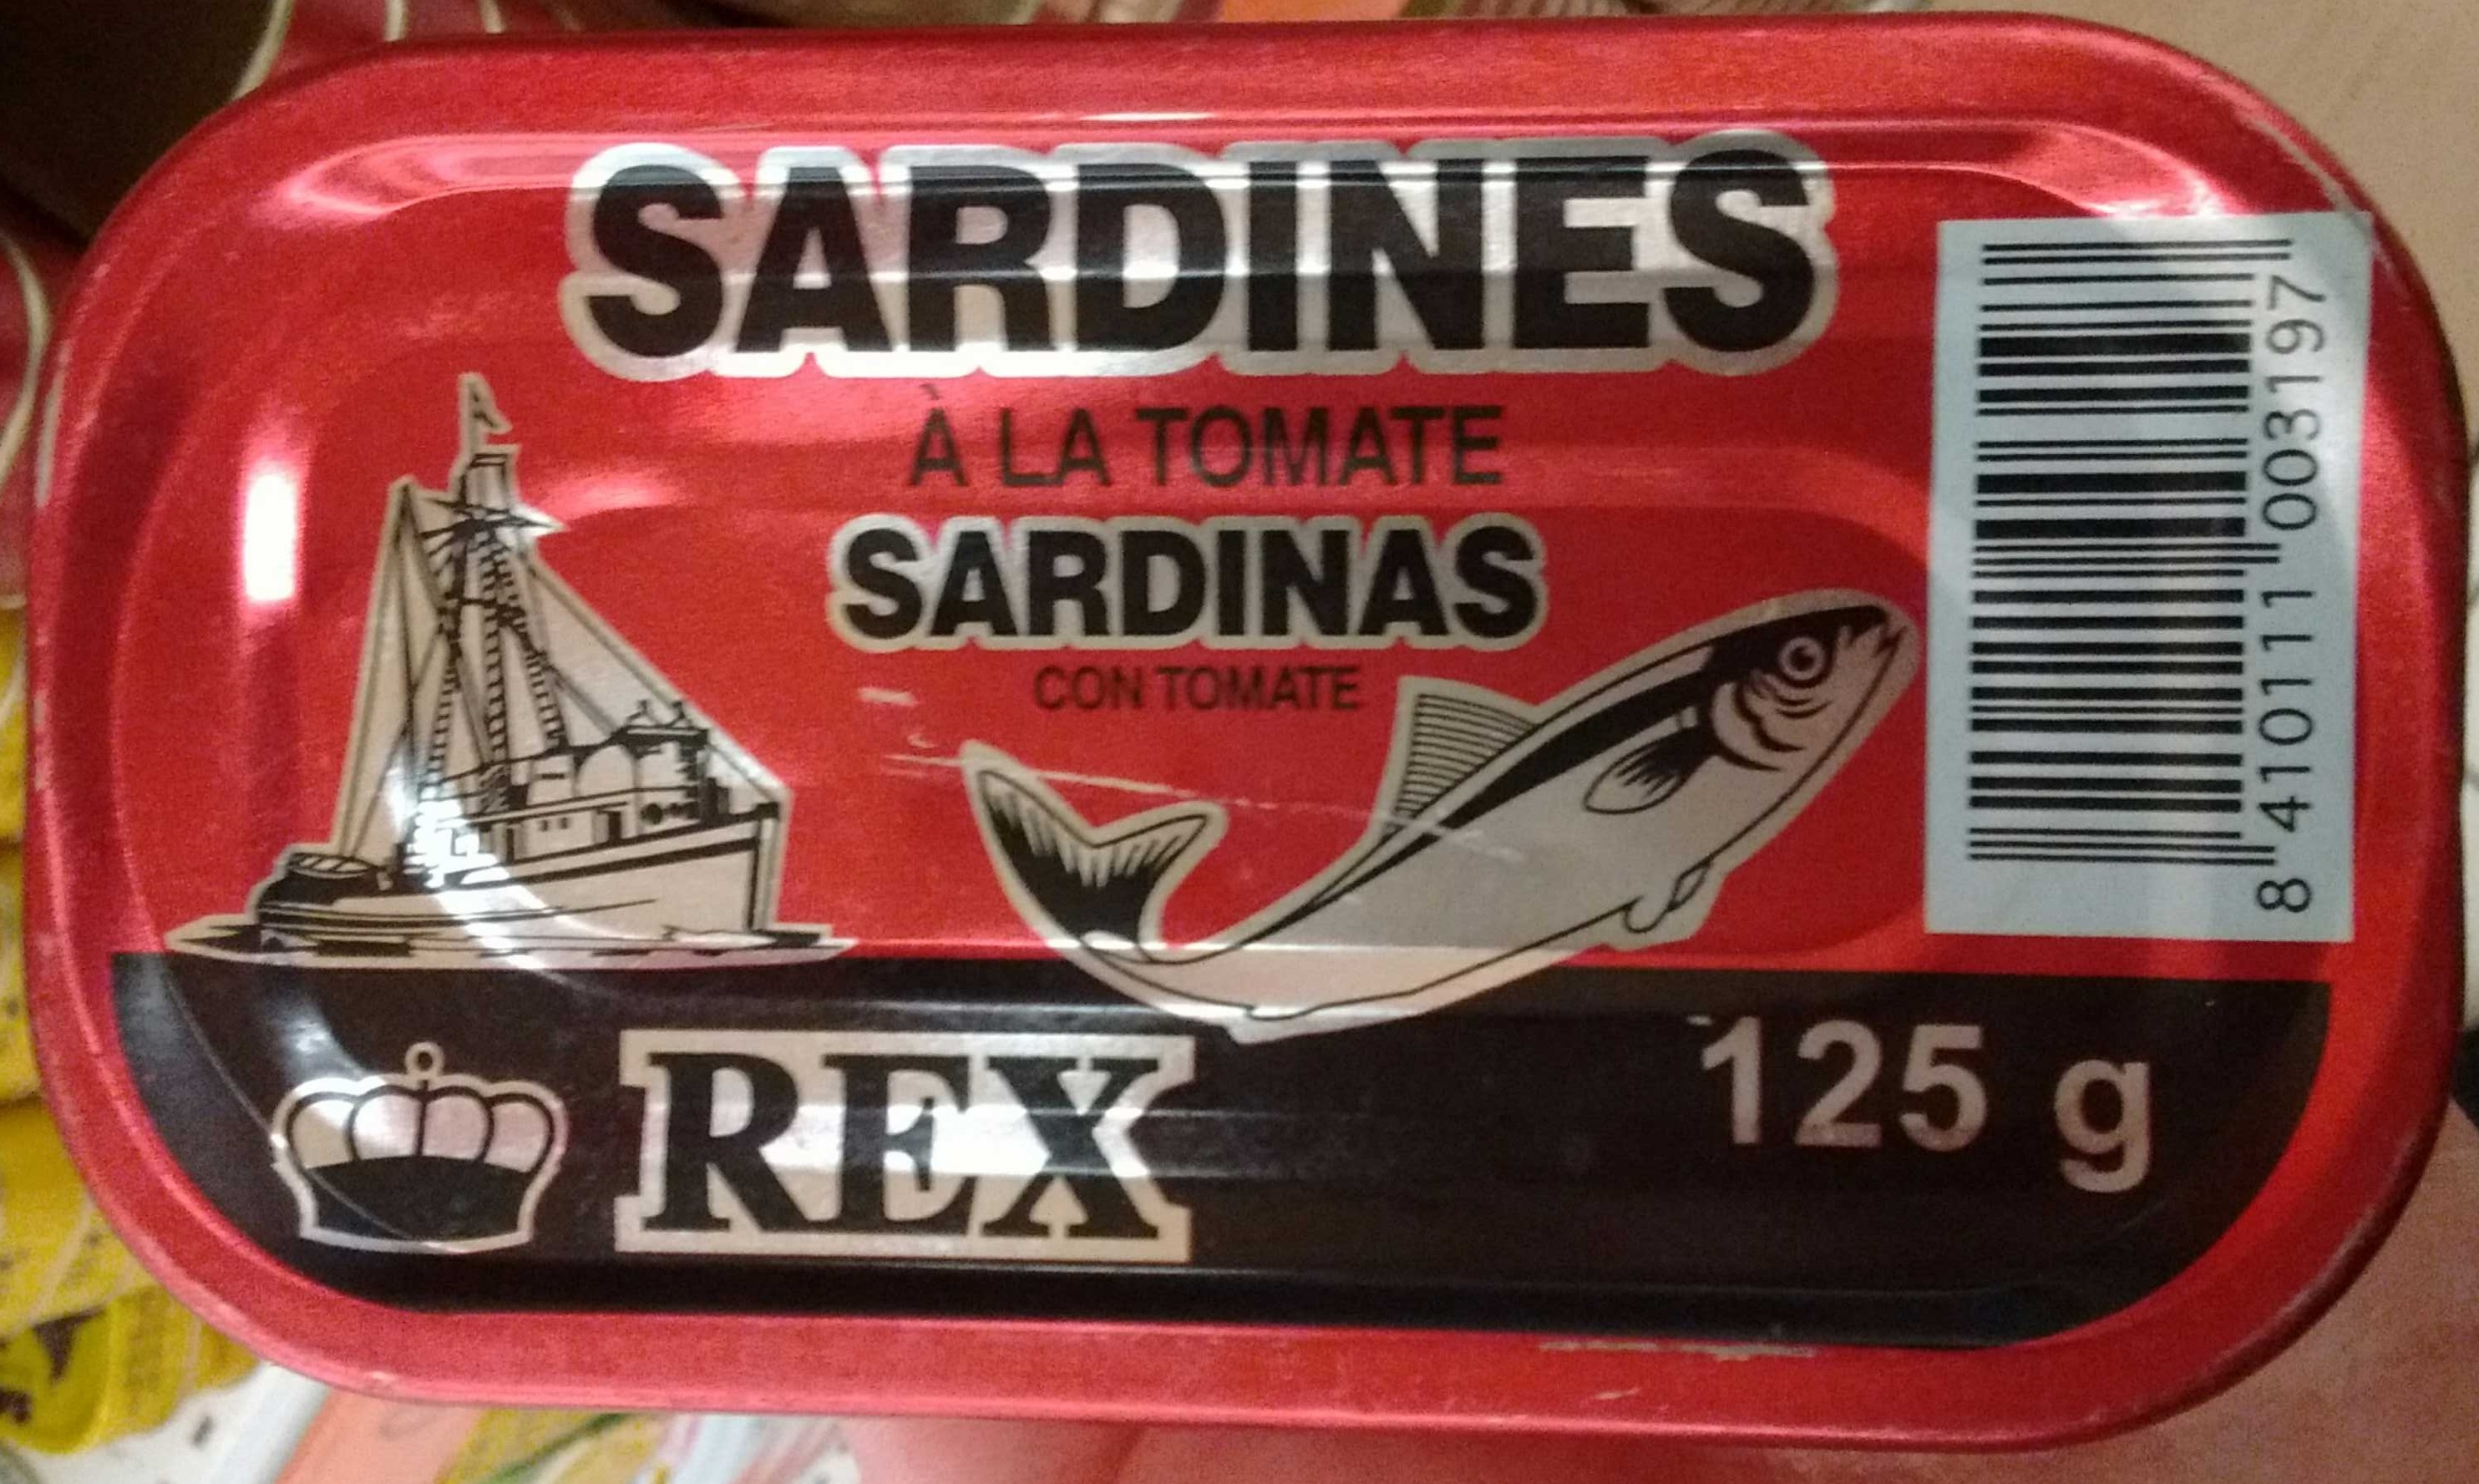 Sardines à la tomate - Product - fr